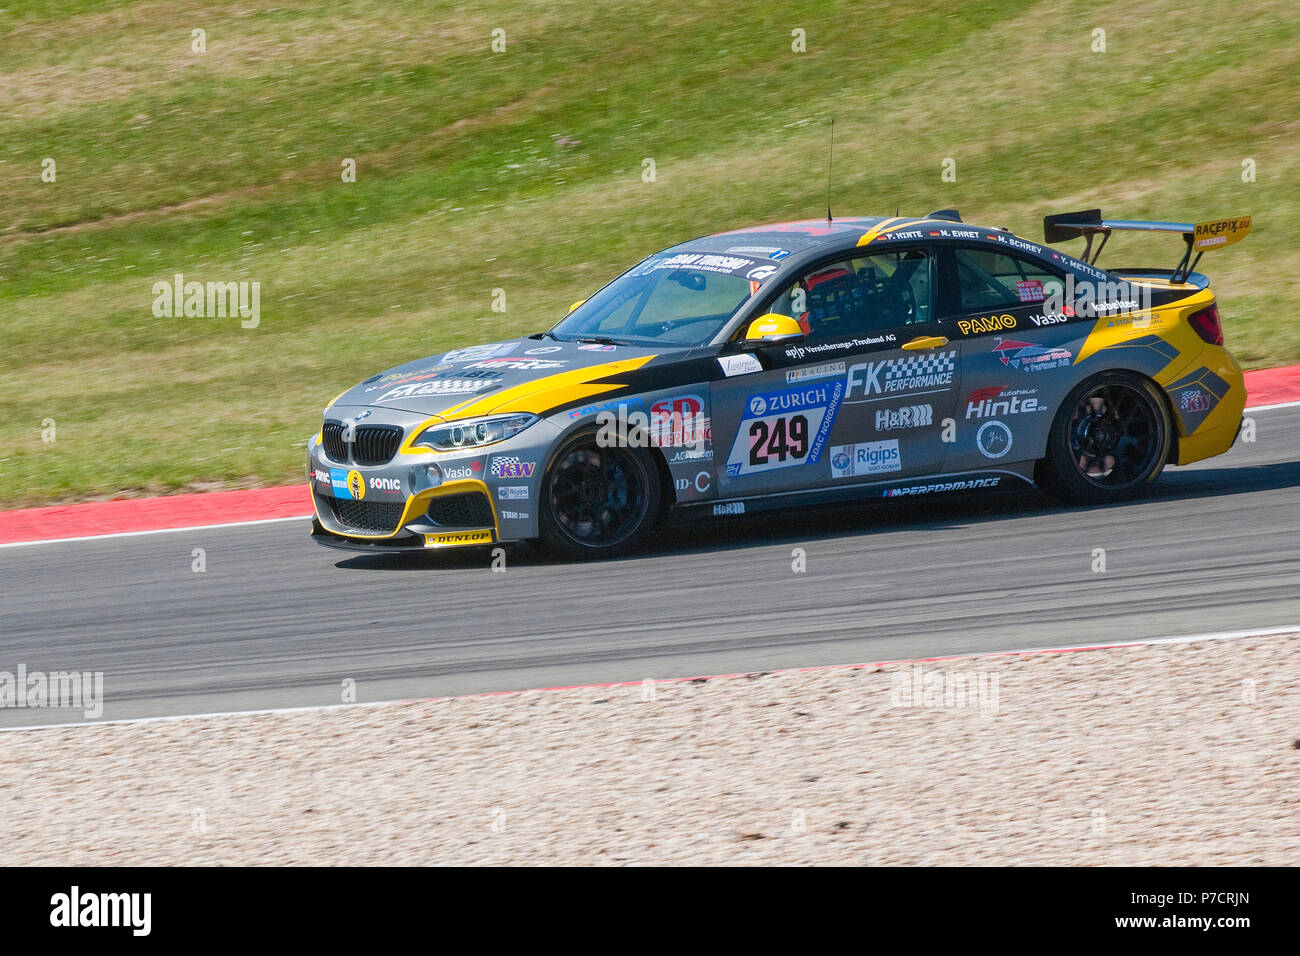 BMW M235i Racing, Nuerburgring 24h race 2017, motorsports, Eifel, Rhineland-Palatinate, Germany, Europe Stock Photo